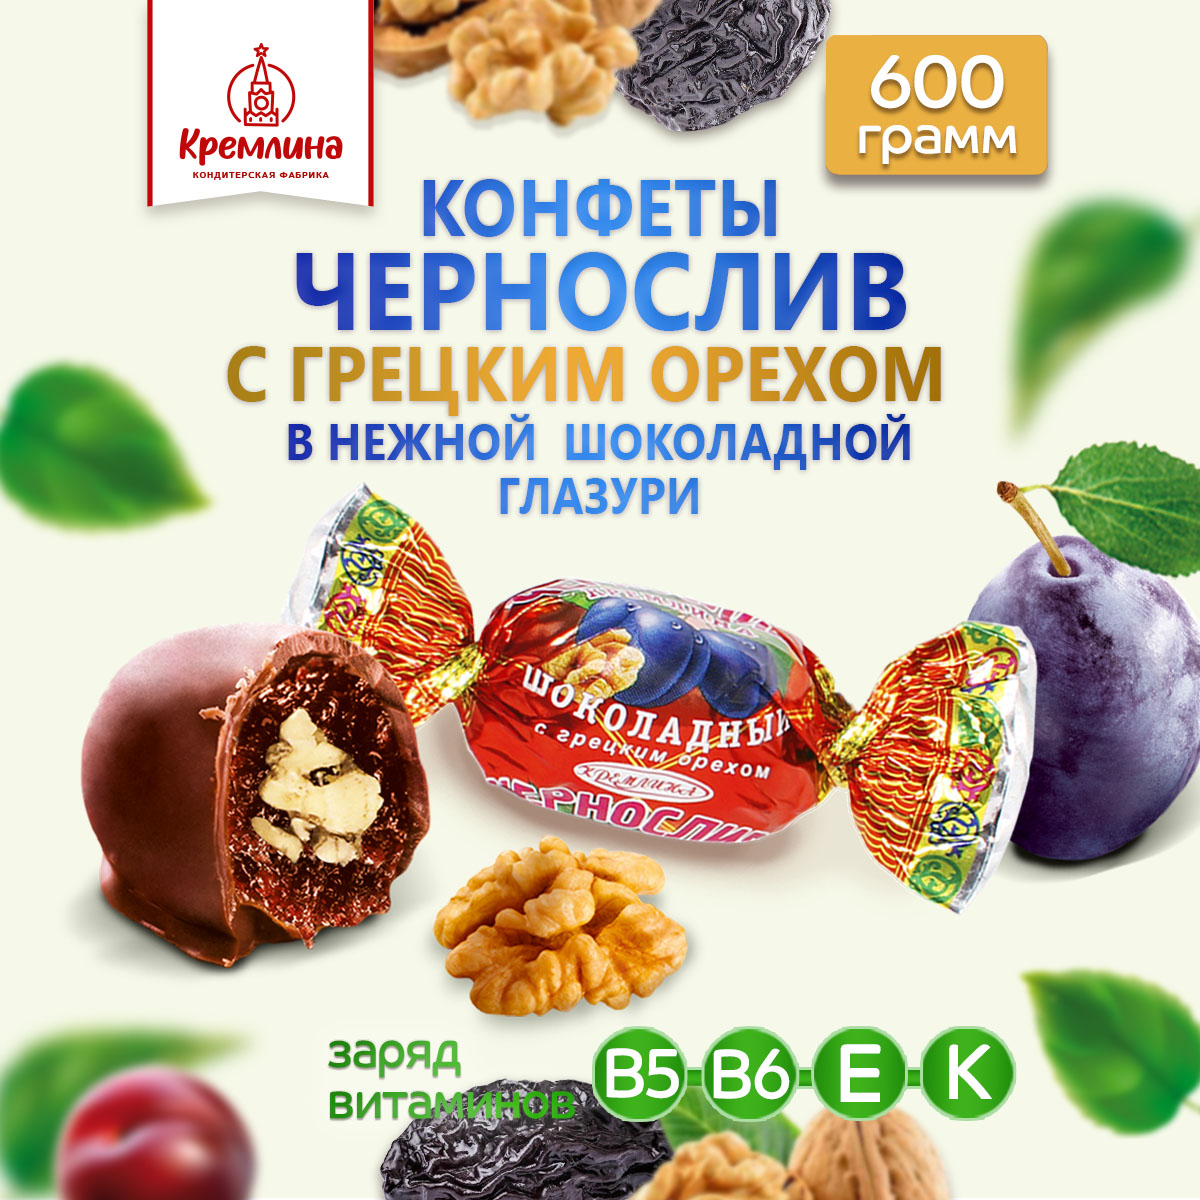 Конфеты чернослив в глазури Кремлина с грецким орехом пакет 600 гр - фото 1